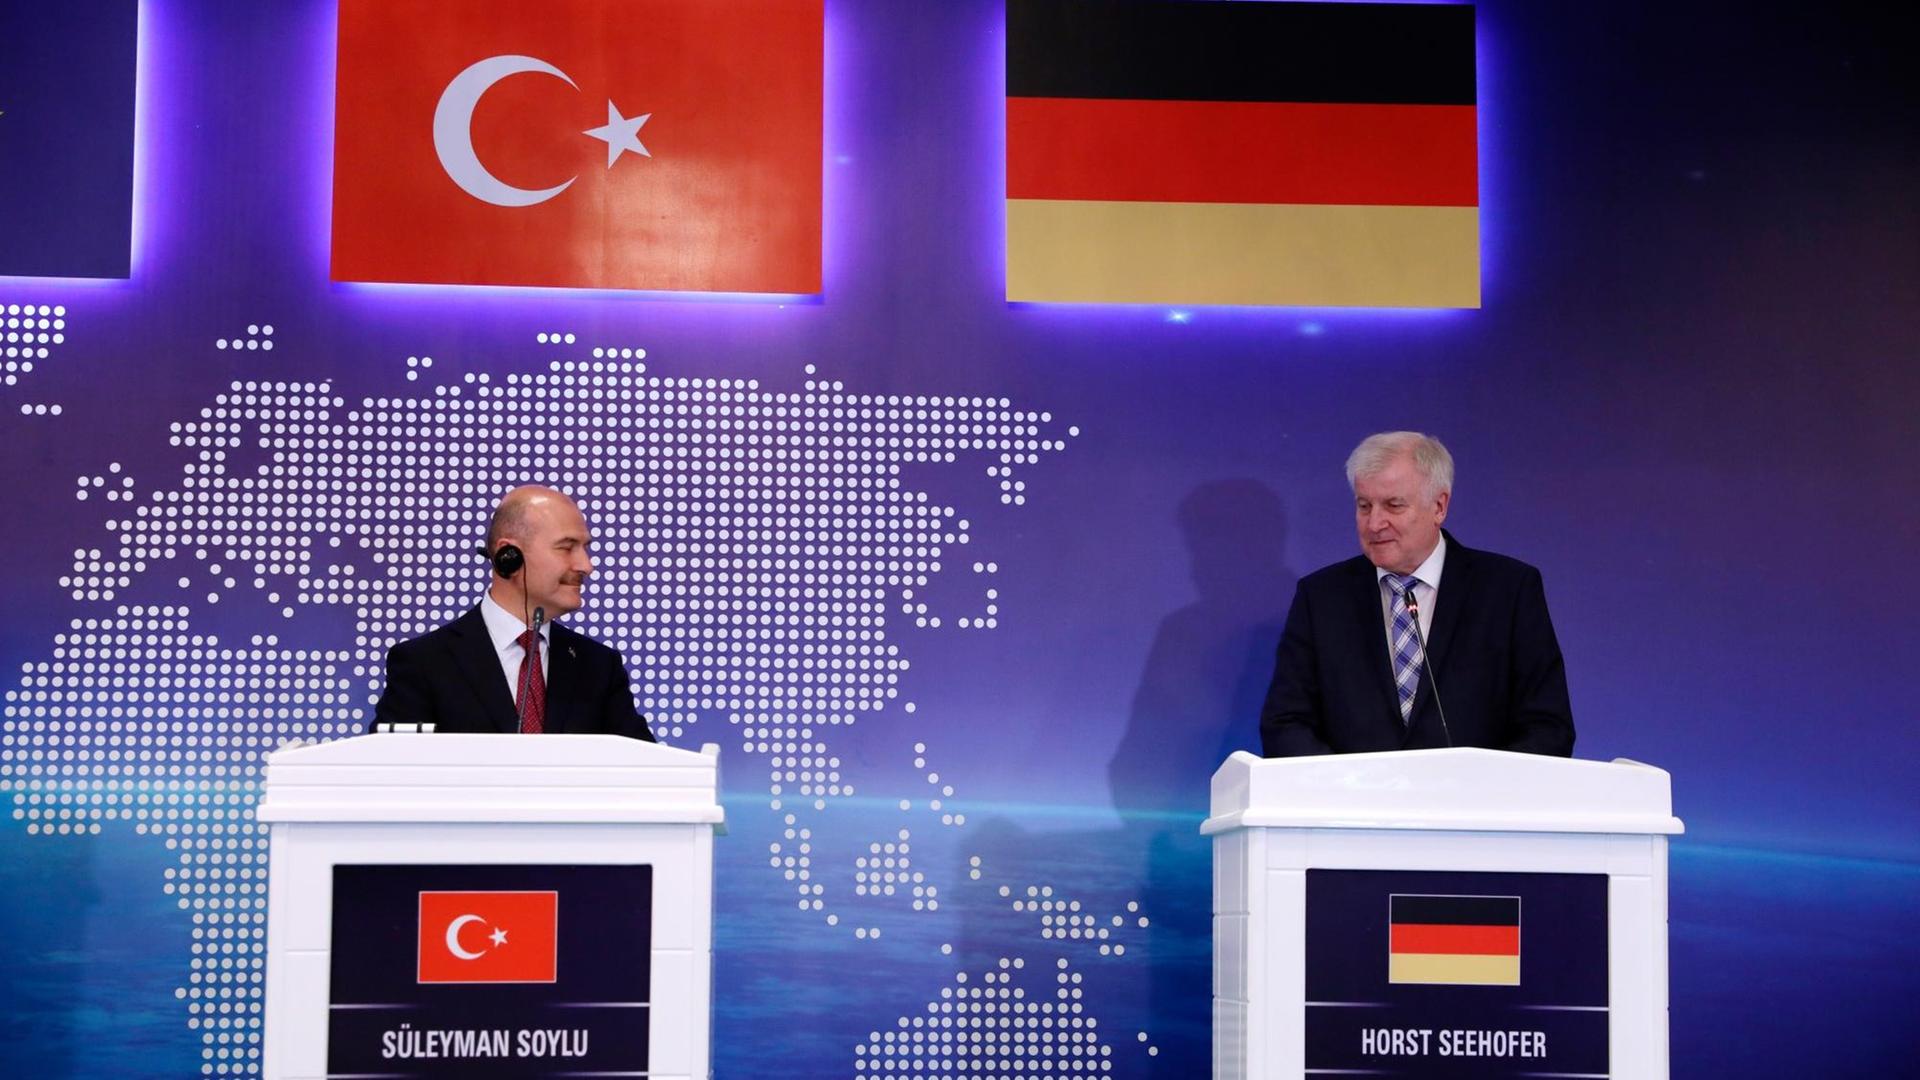 Suleyman Soylu (l), Innenminister der Türkei, und Horst Seehofer, Innenminister von Deutschland, bei einer gemeinsamen Pressekonferenz